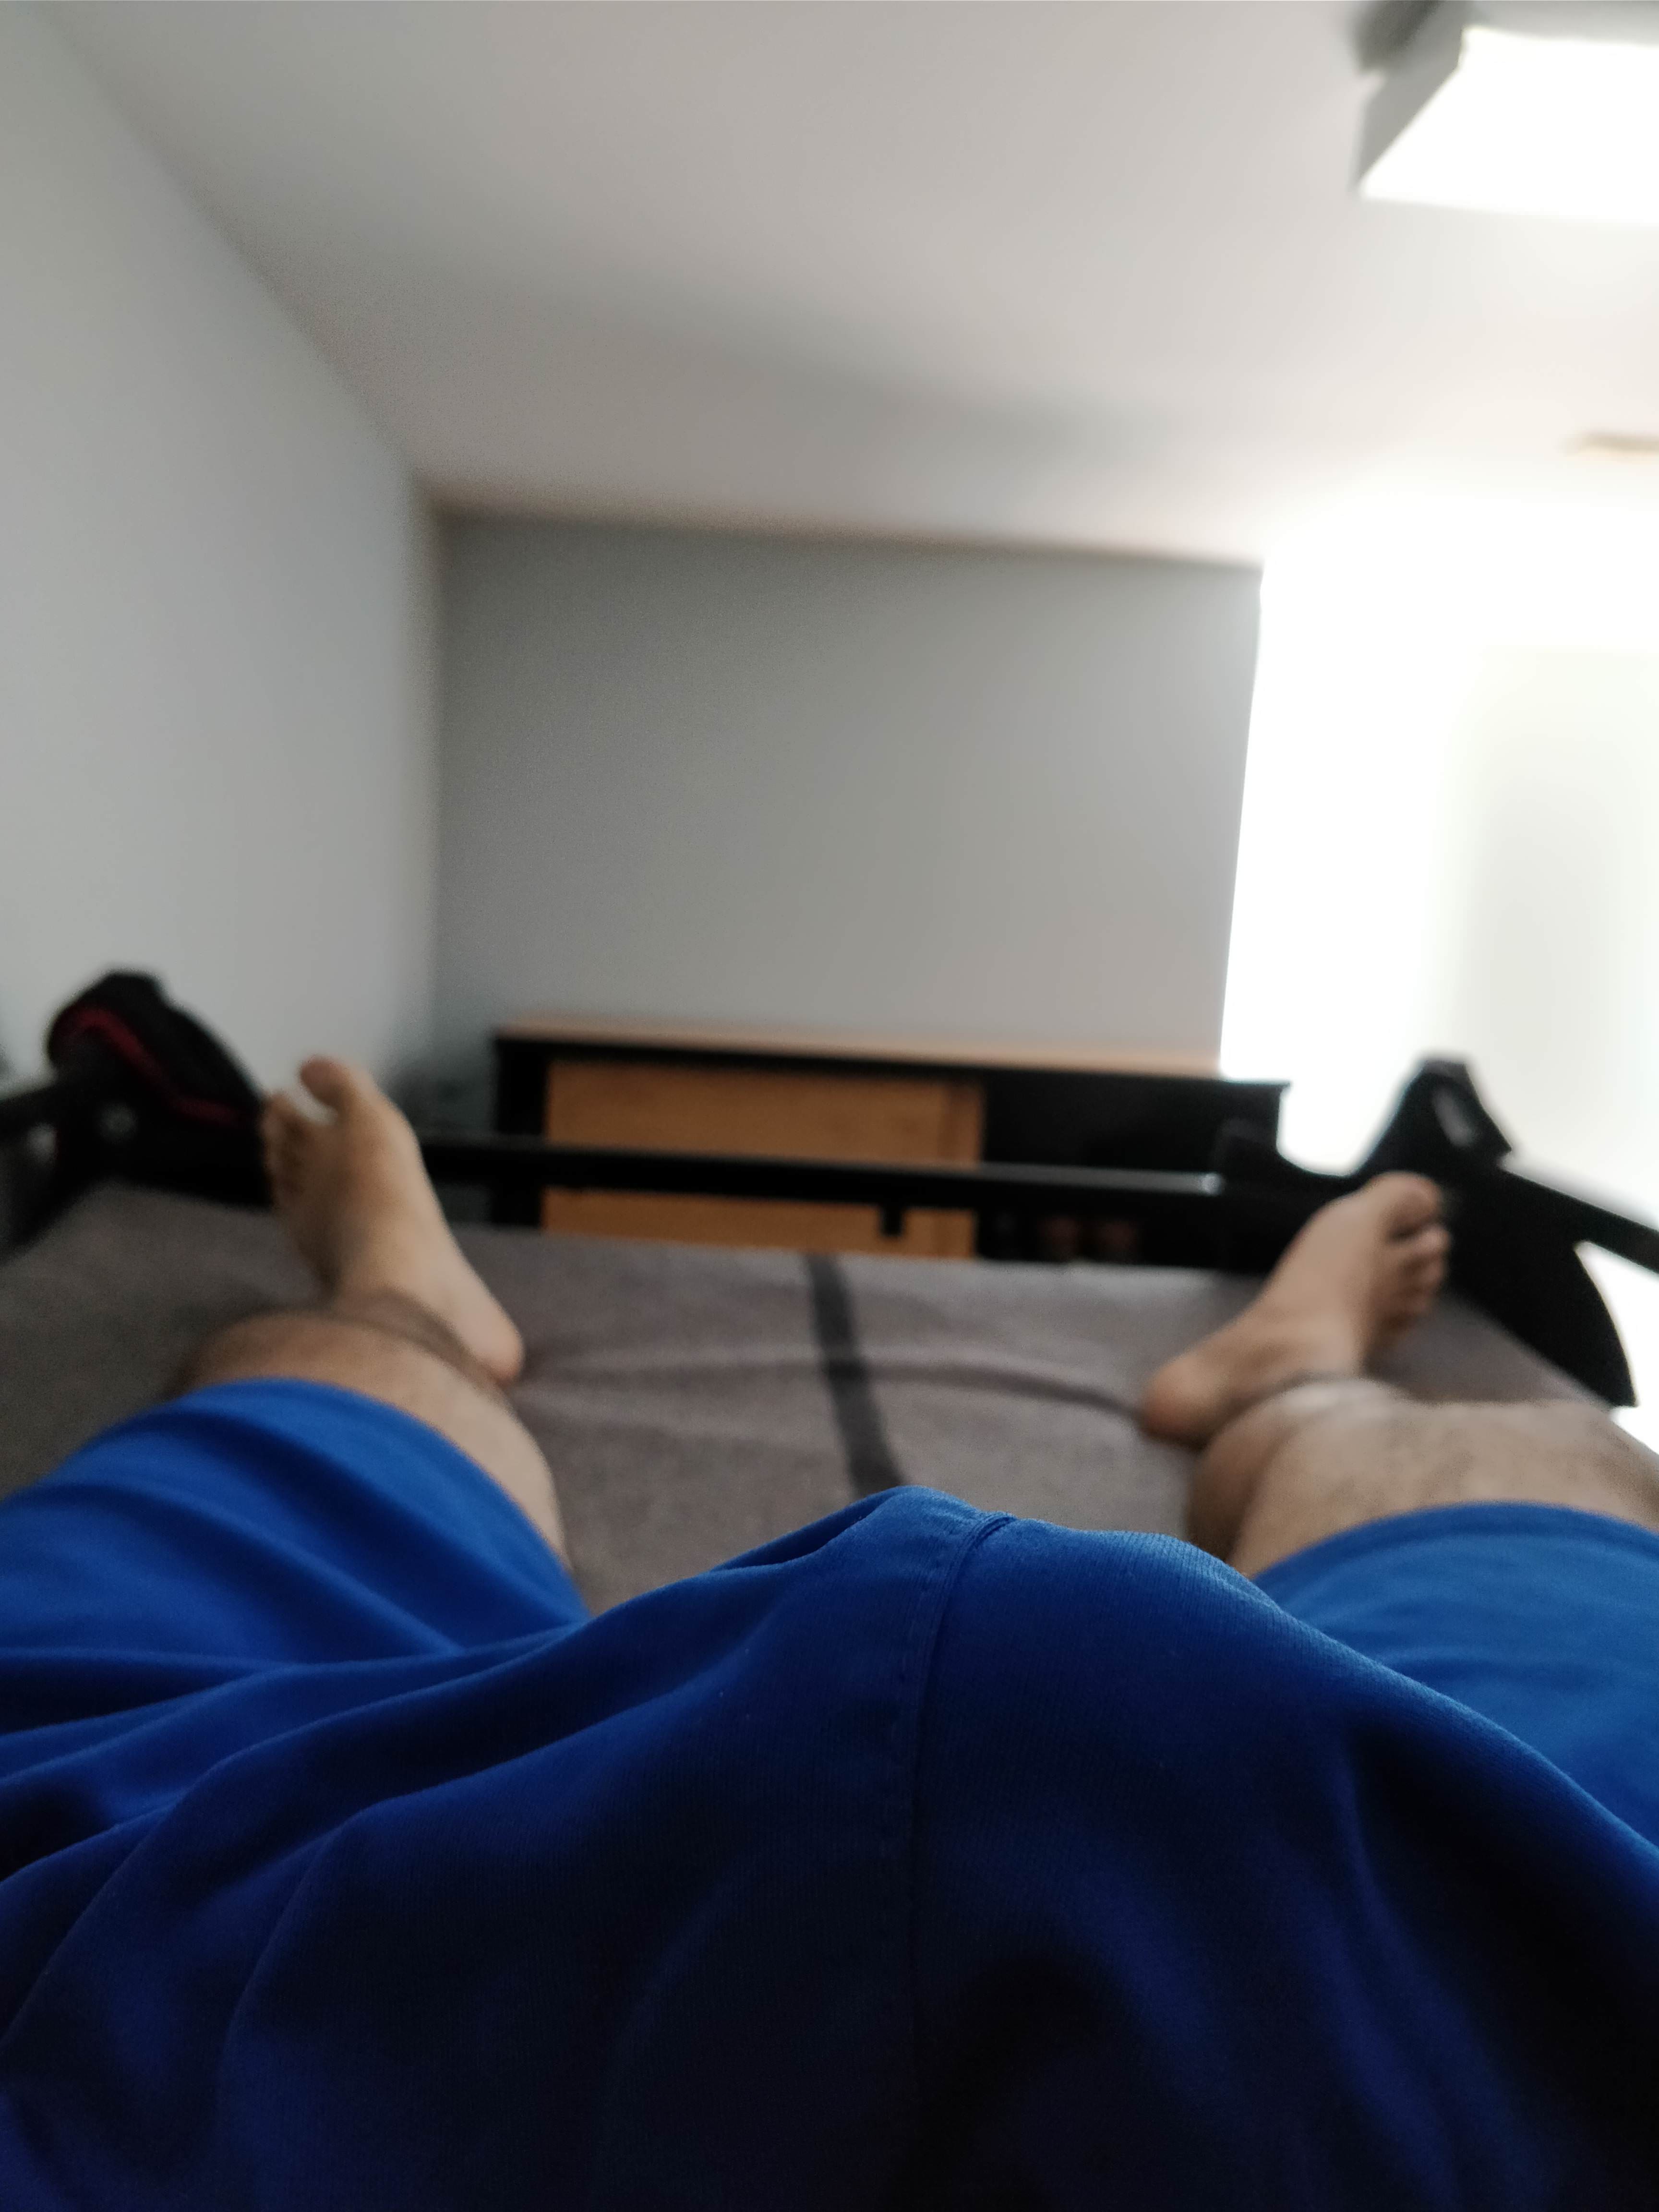 I woke up like this | Udbulinger  Porno | Hot XXX Gays